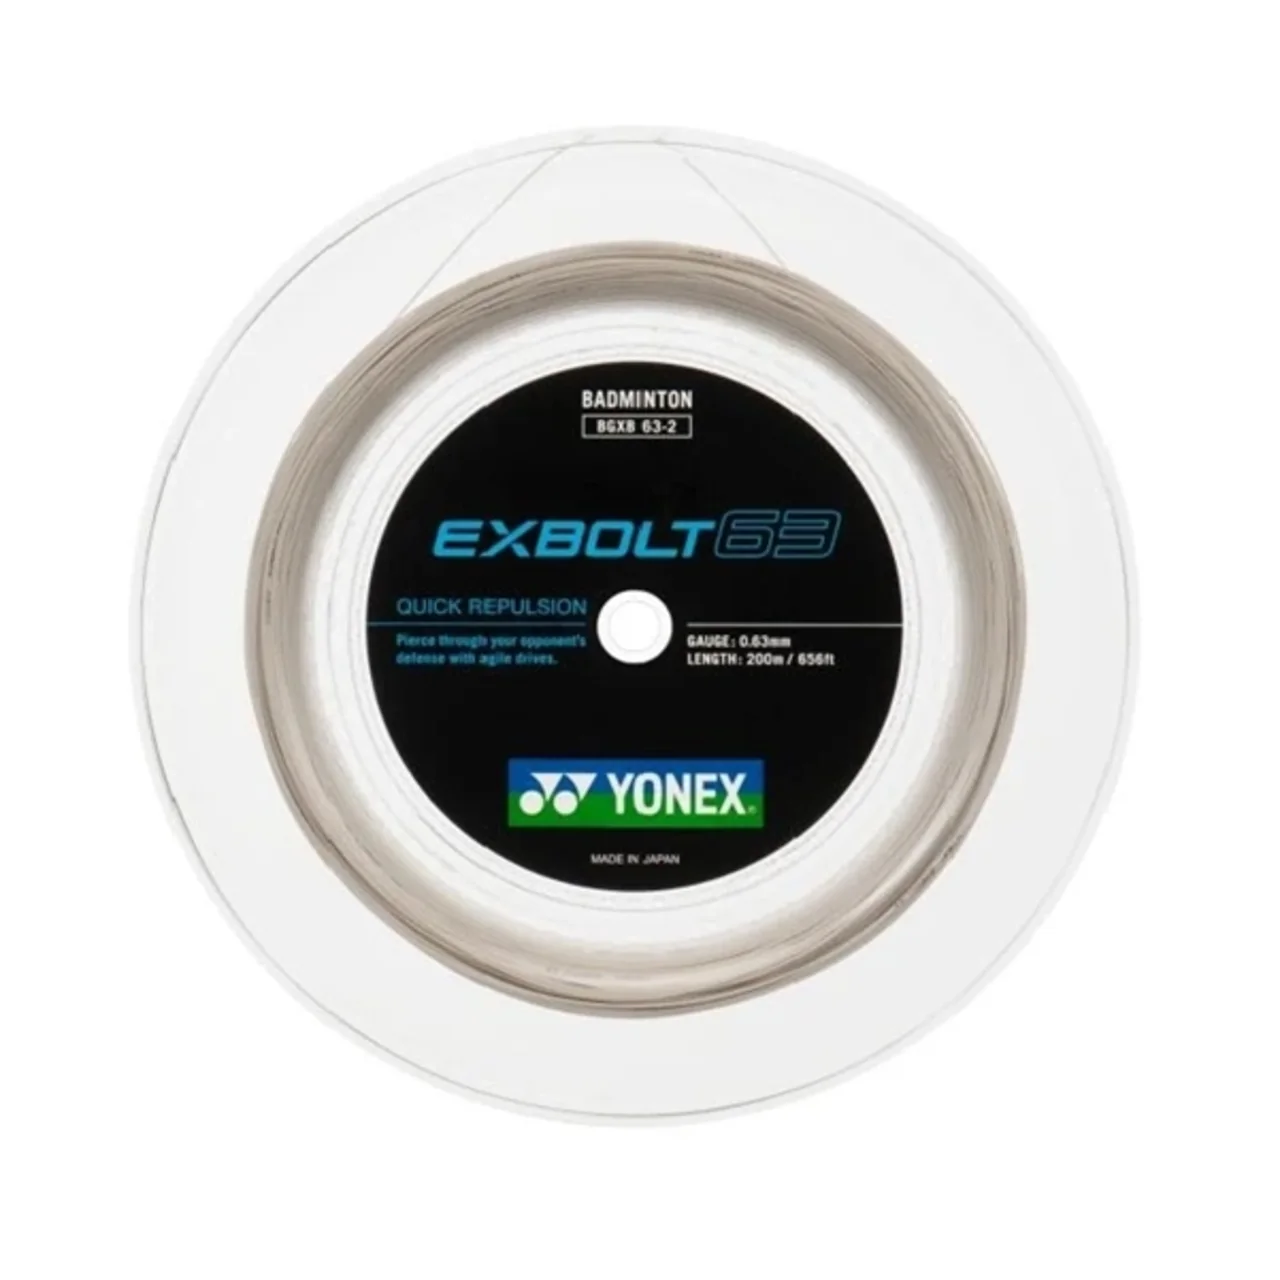 Yonex Exbolt 63 200m White